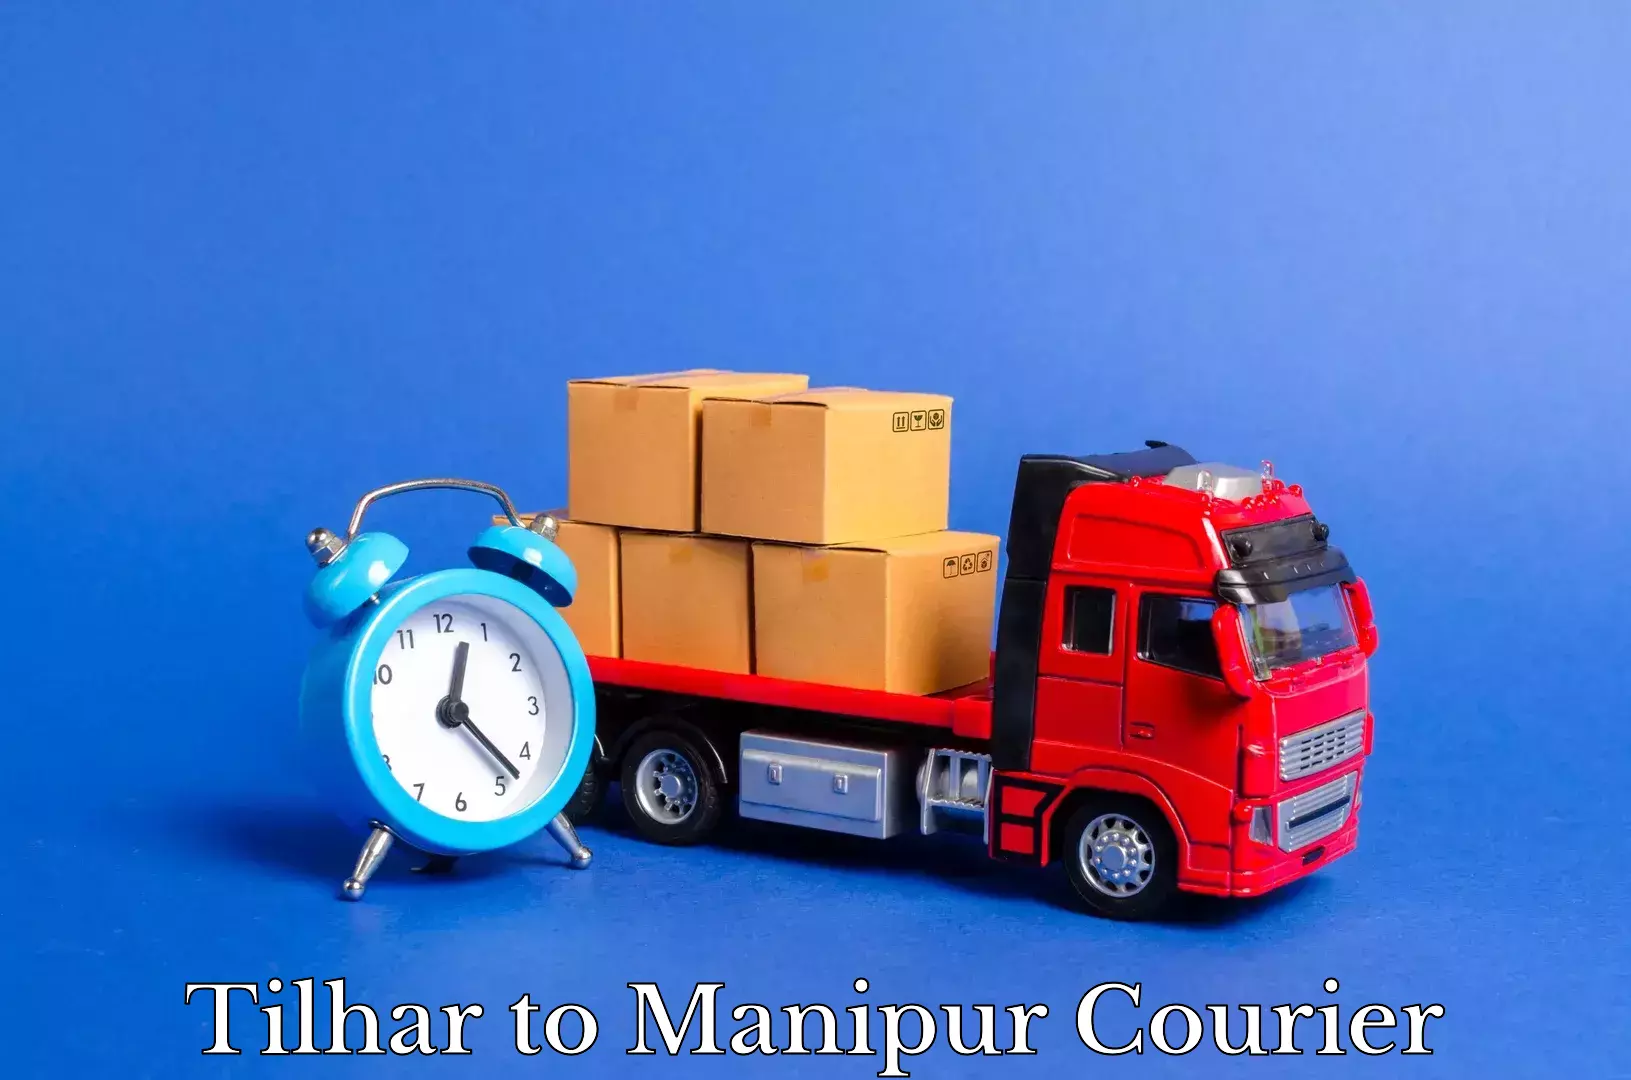 Furniture transport company Tilhar to Manipur